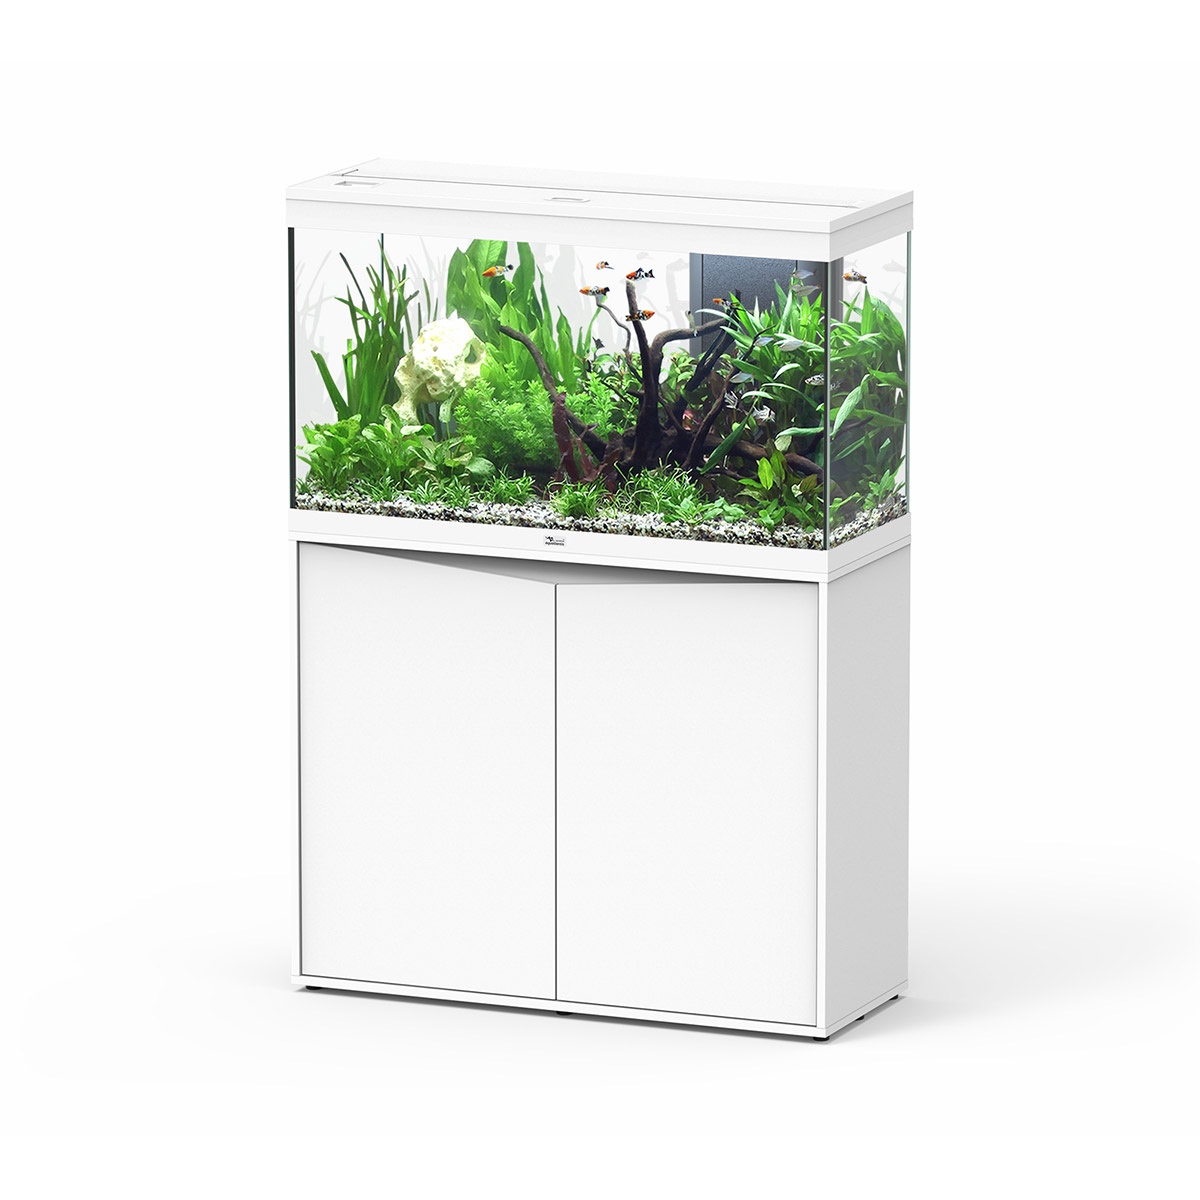 Aquatlantis Aquariumkombination Splendid 200l – 100×40 cm Piano Weiß